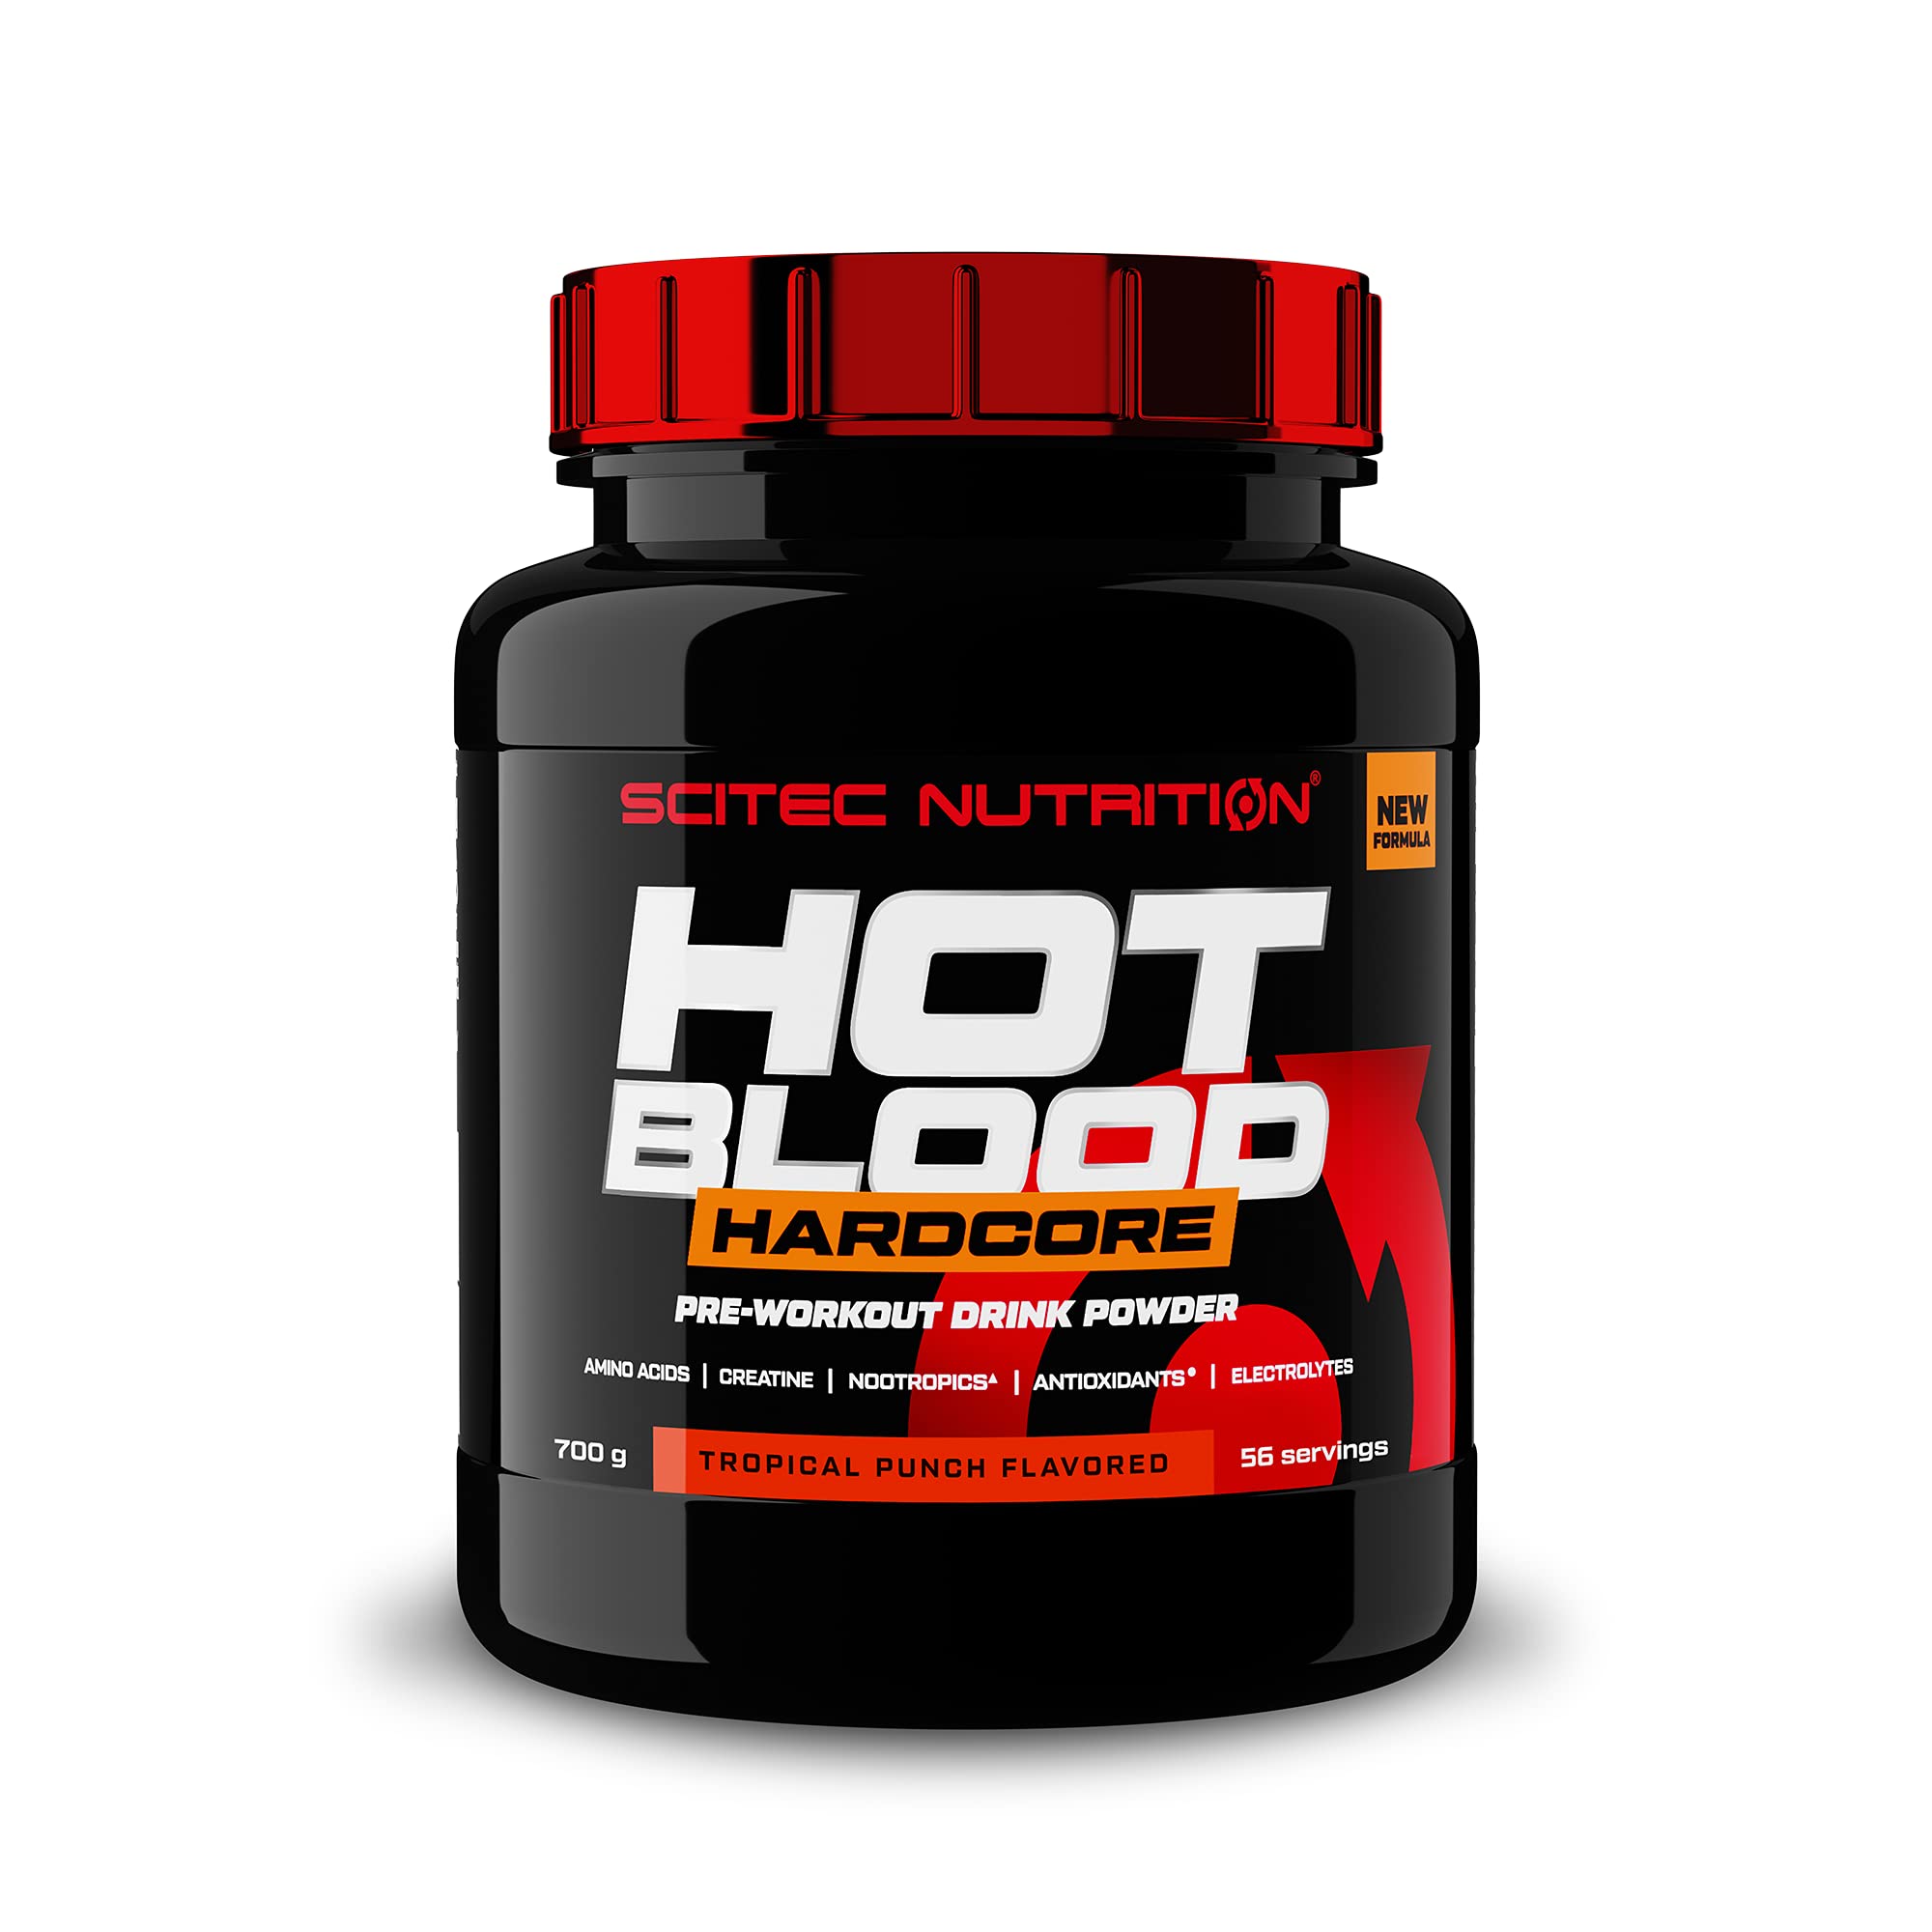 Scitec Nutrition Hot Blood Hardcore, Getränkepulver vor dem Training mit Aminosäuren und Kreatin, 700g, Tropical Punsch